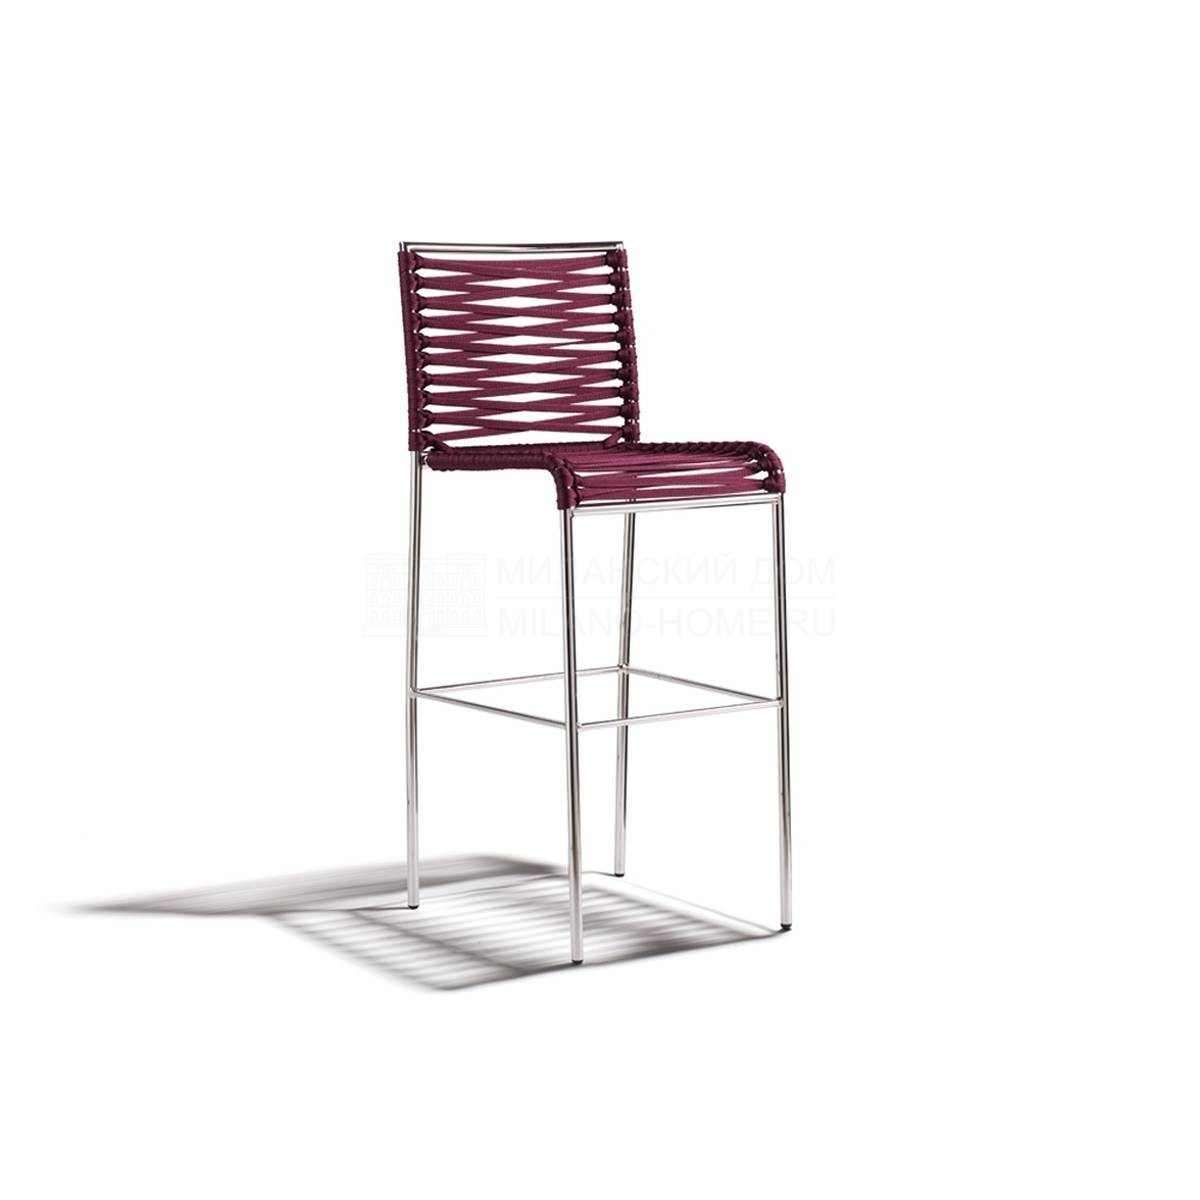 Полубарный стул Aria / art.864S из Италии фабрики POTOCCO